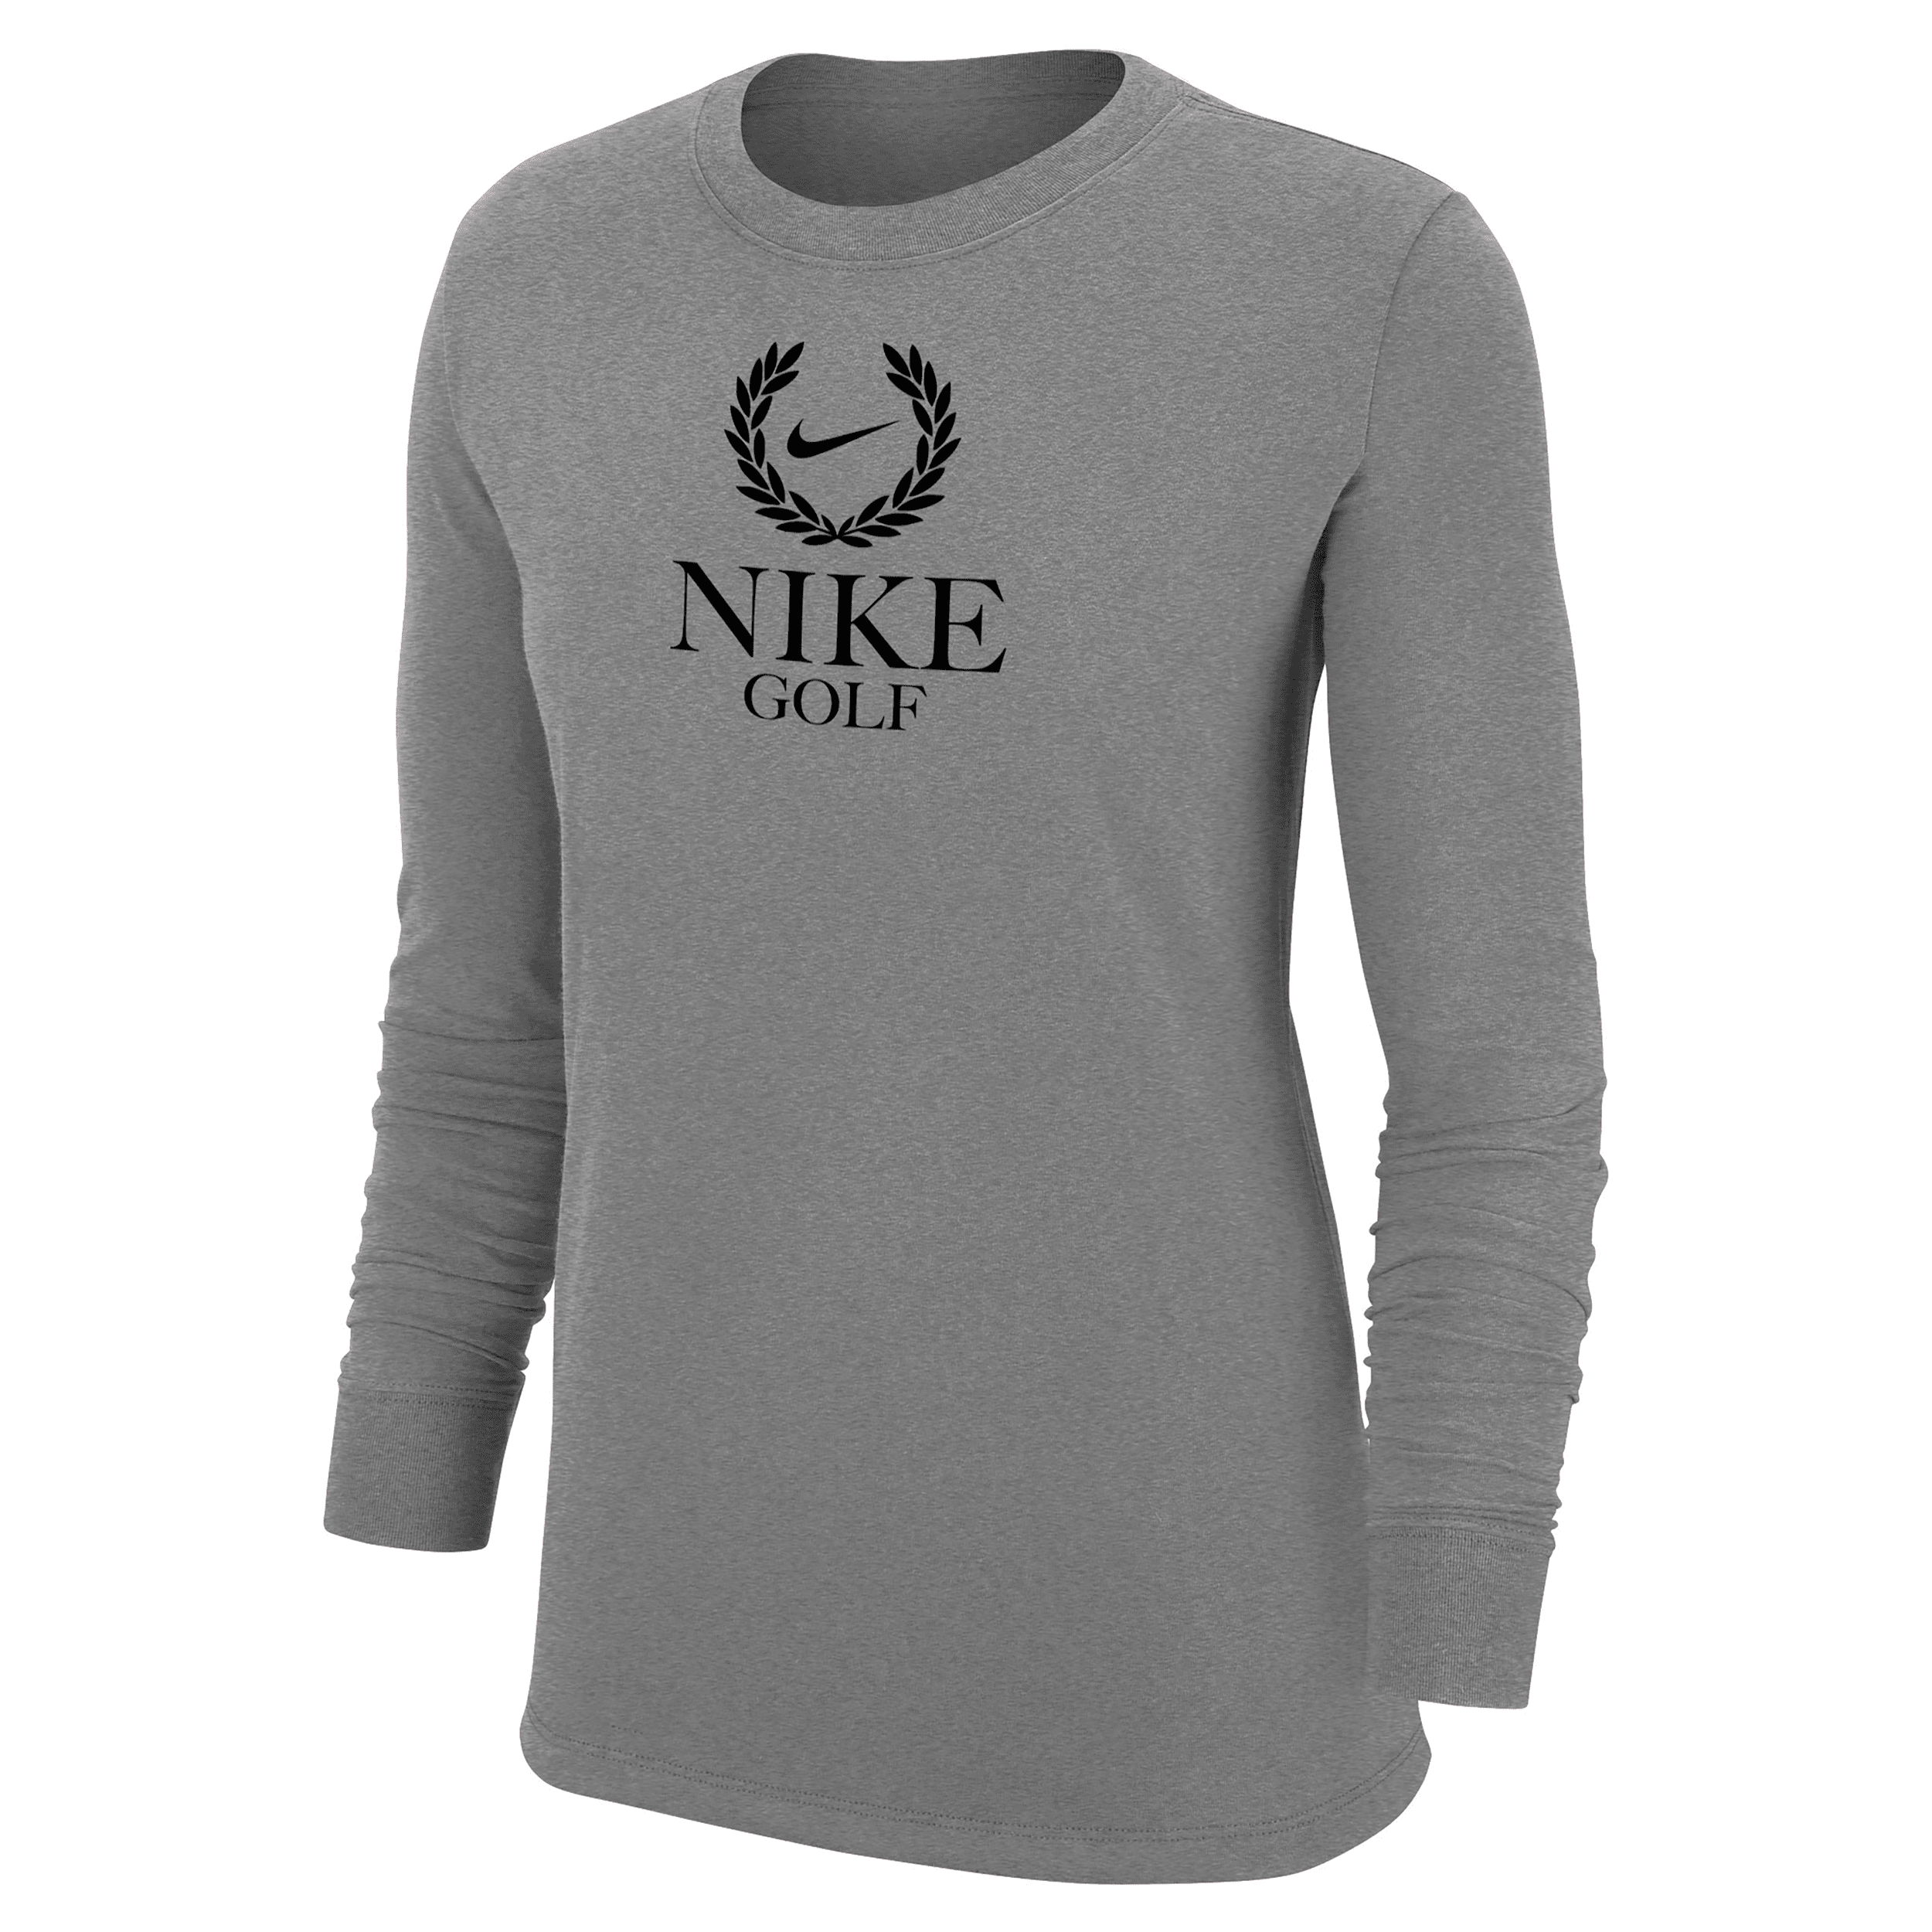 Nike Women's Golf Long-sleeve T-shirt In Grey